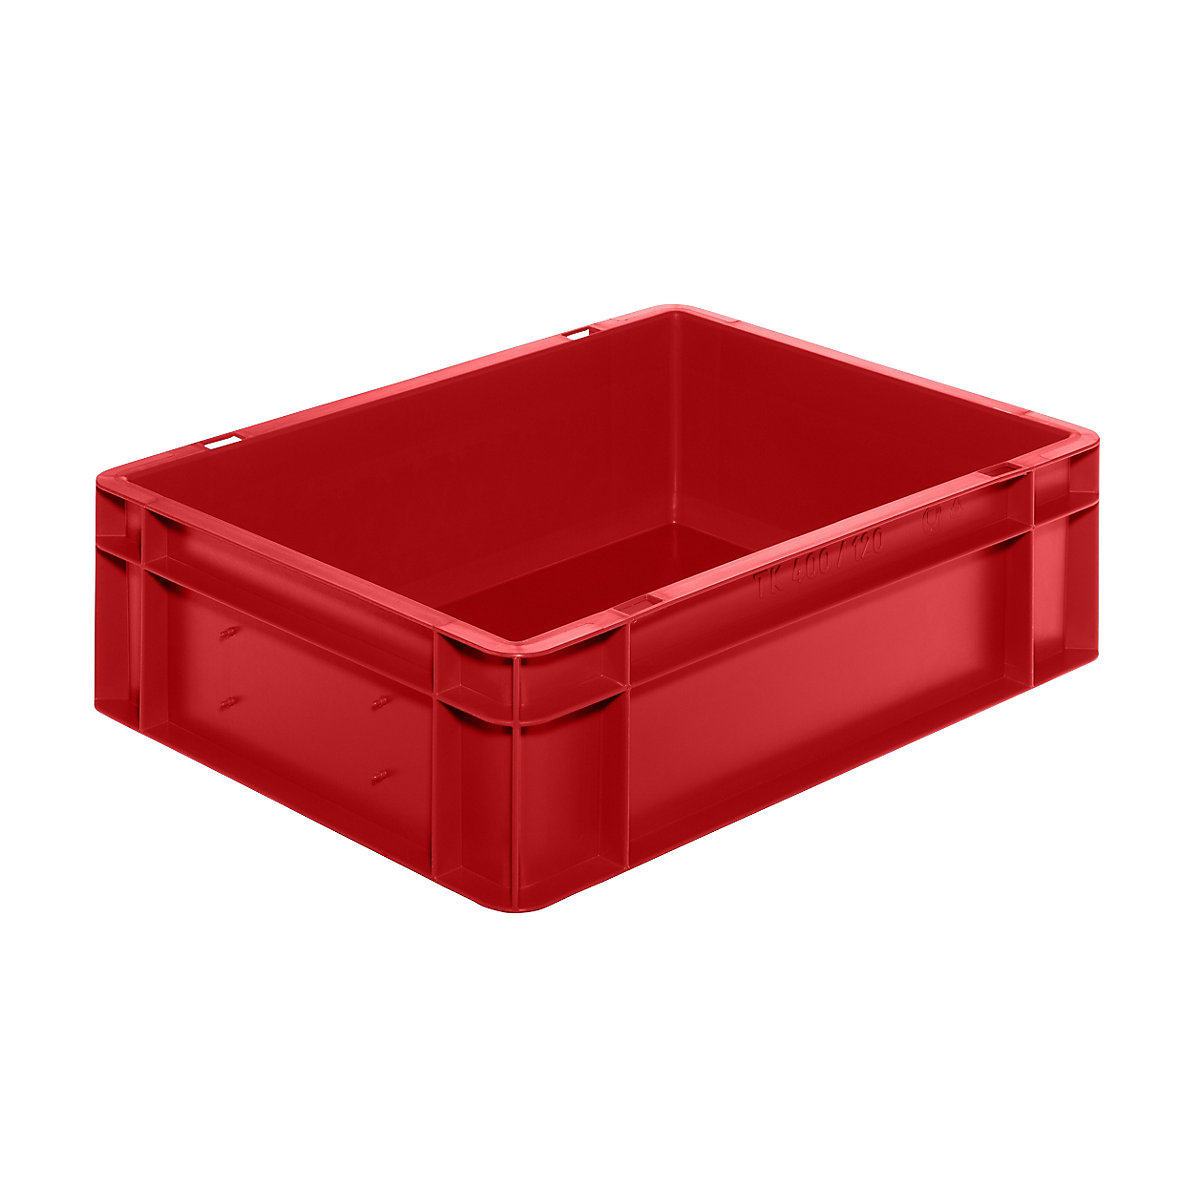 rot Inhalt 23 Liter Eurobehälter / Stapelbehälter LxBxH 600 x 400 x 120 mm 